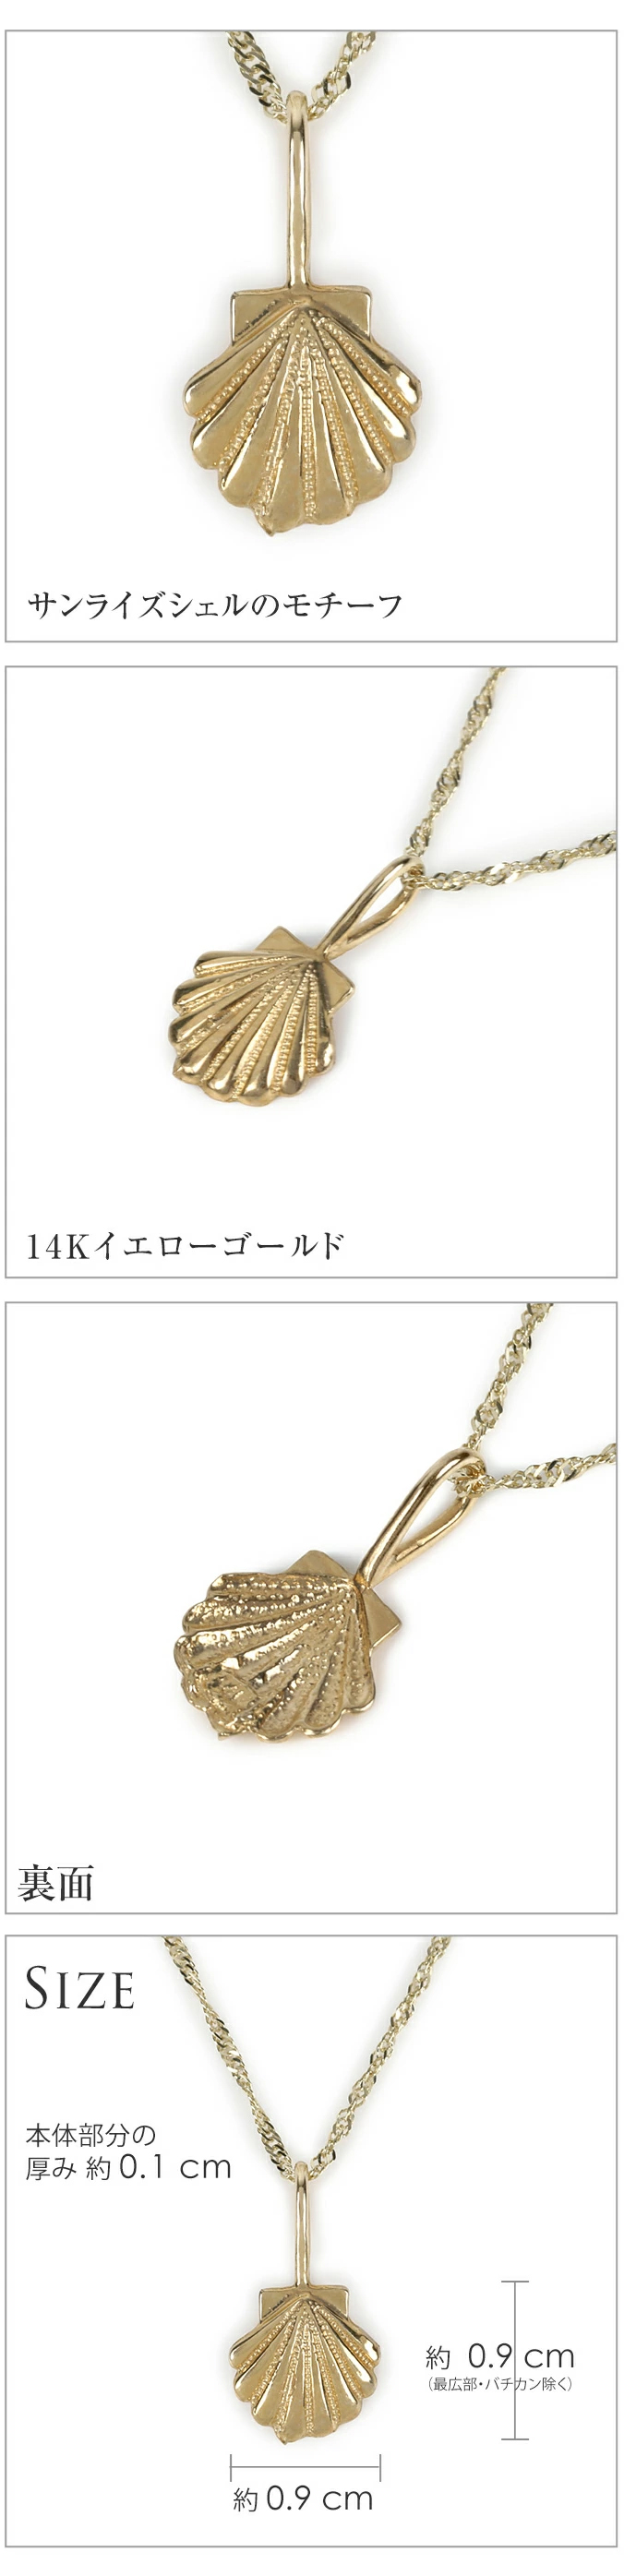 ハワイアンジュエリー jewelry ネックレス ヘッド トップ 14金 14K